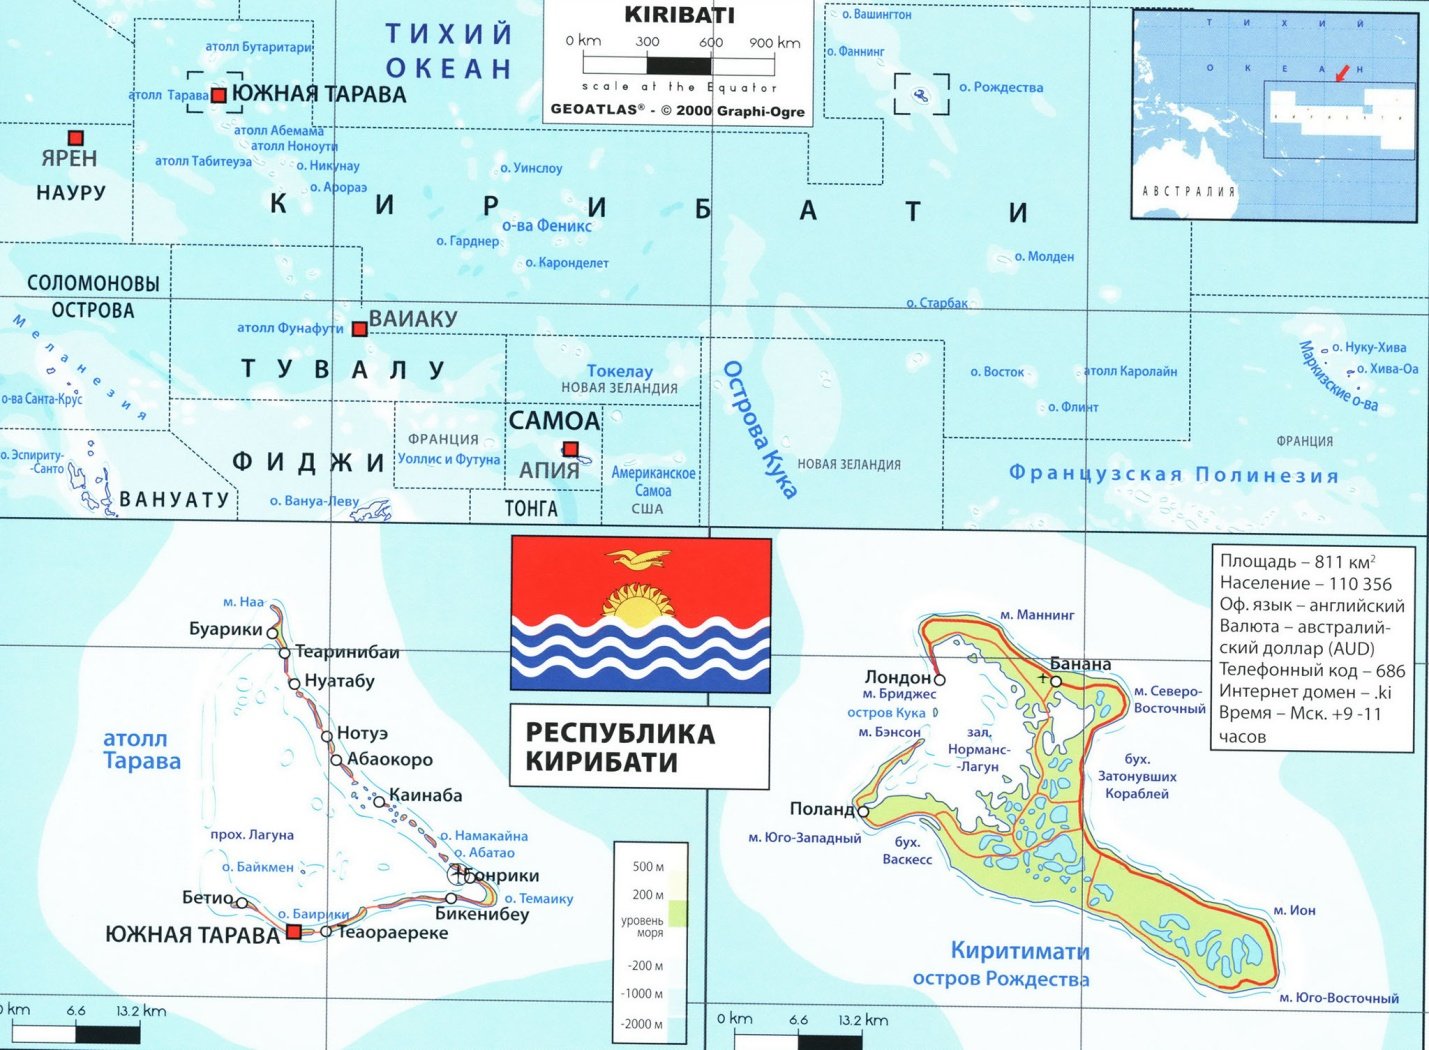 Острова Кирибати в тихом океане на карте мира